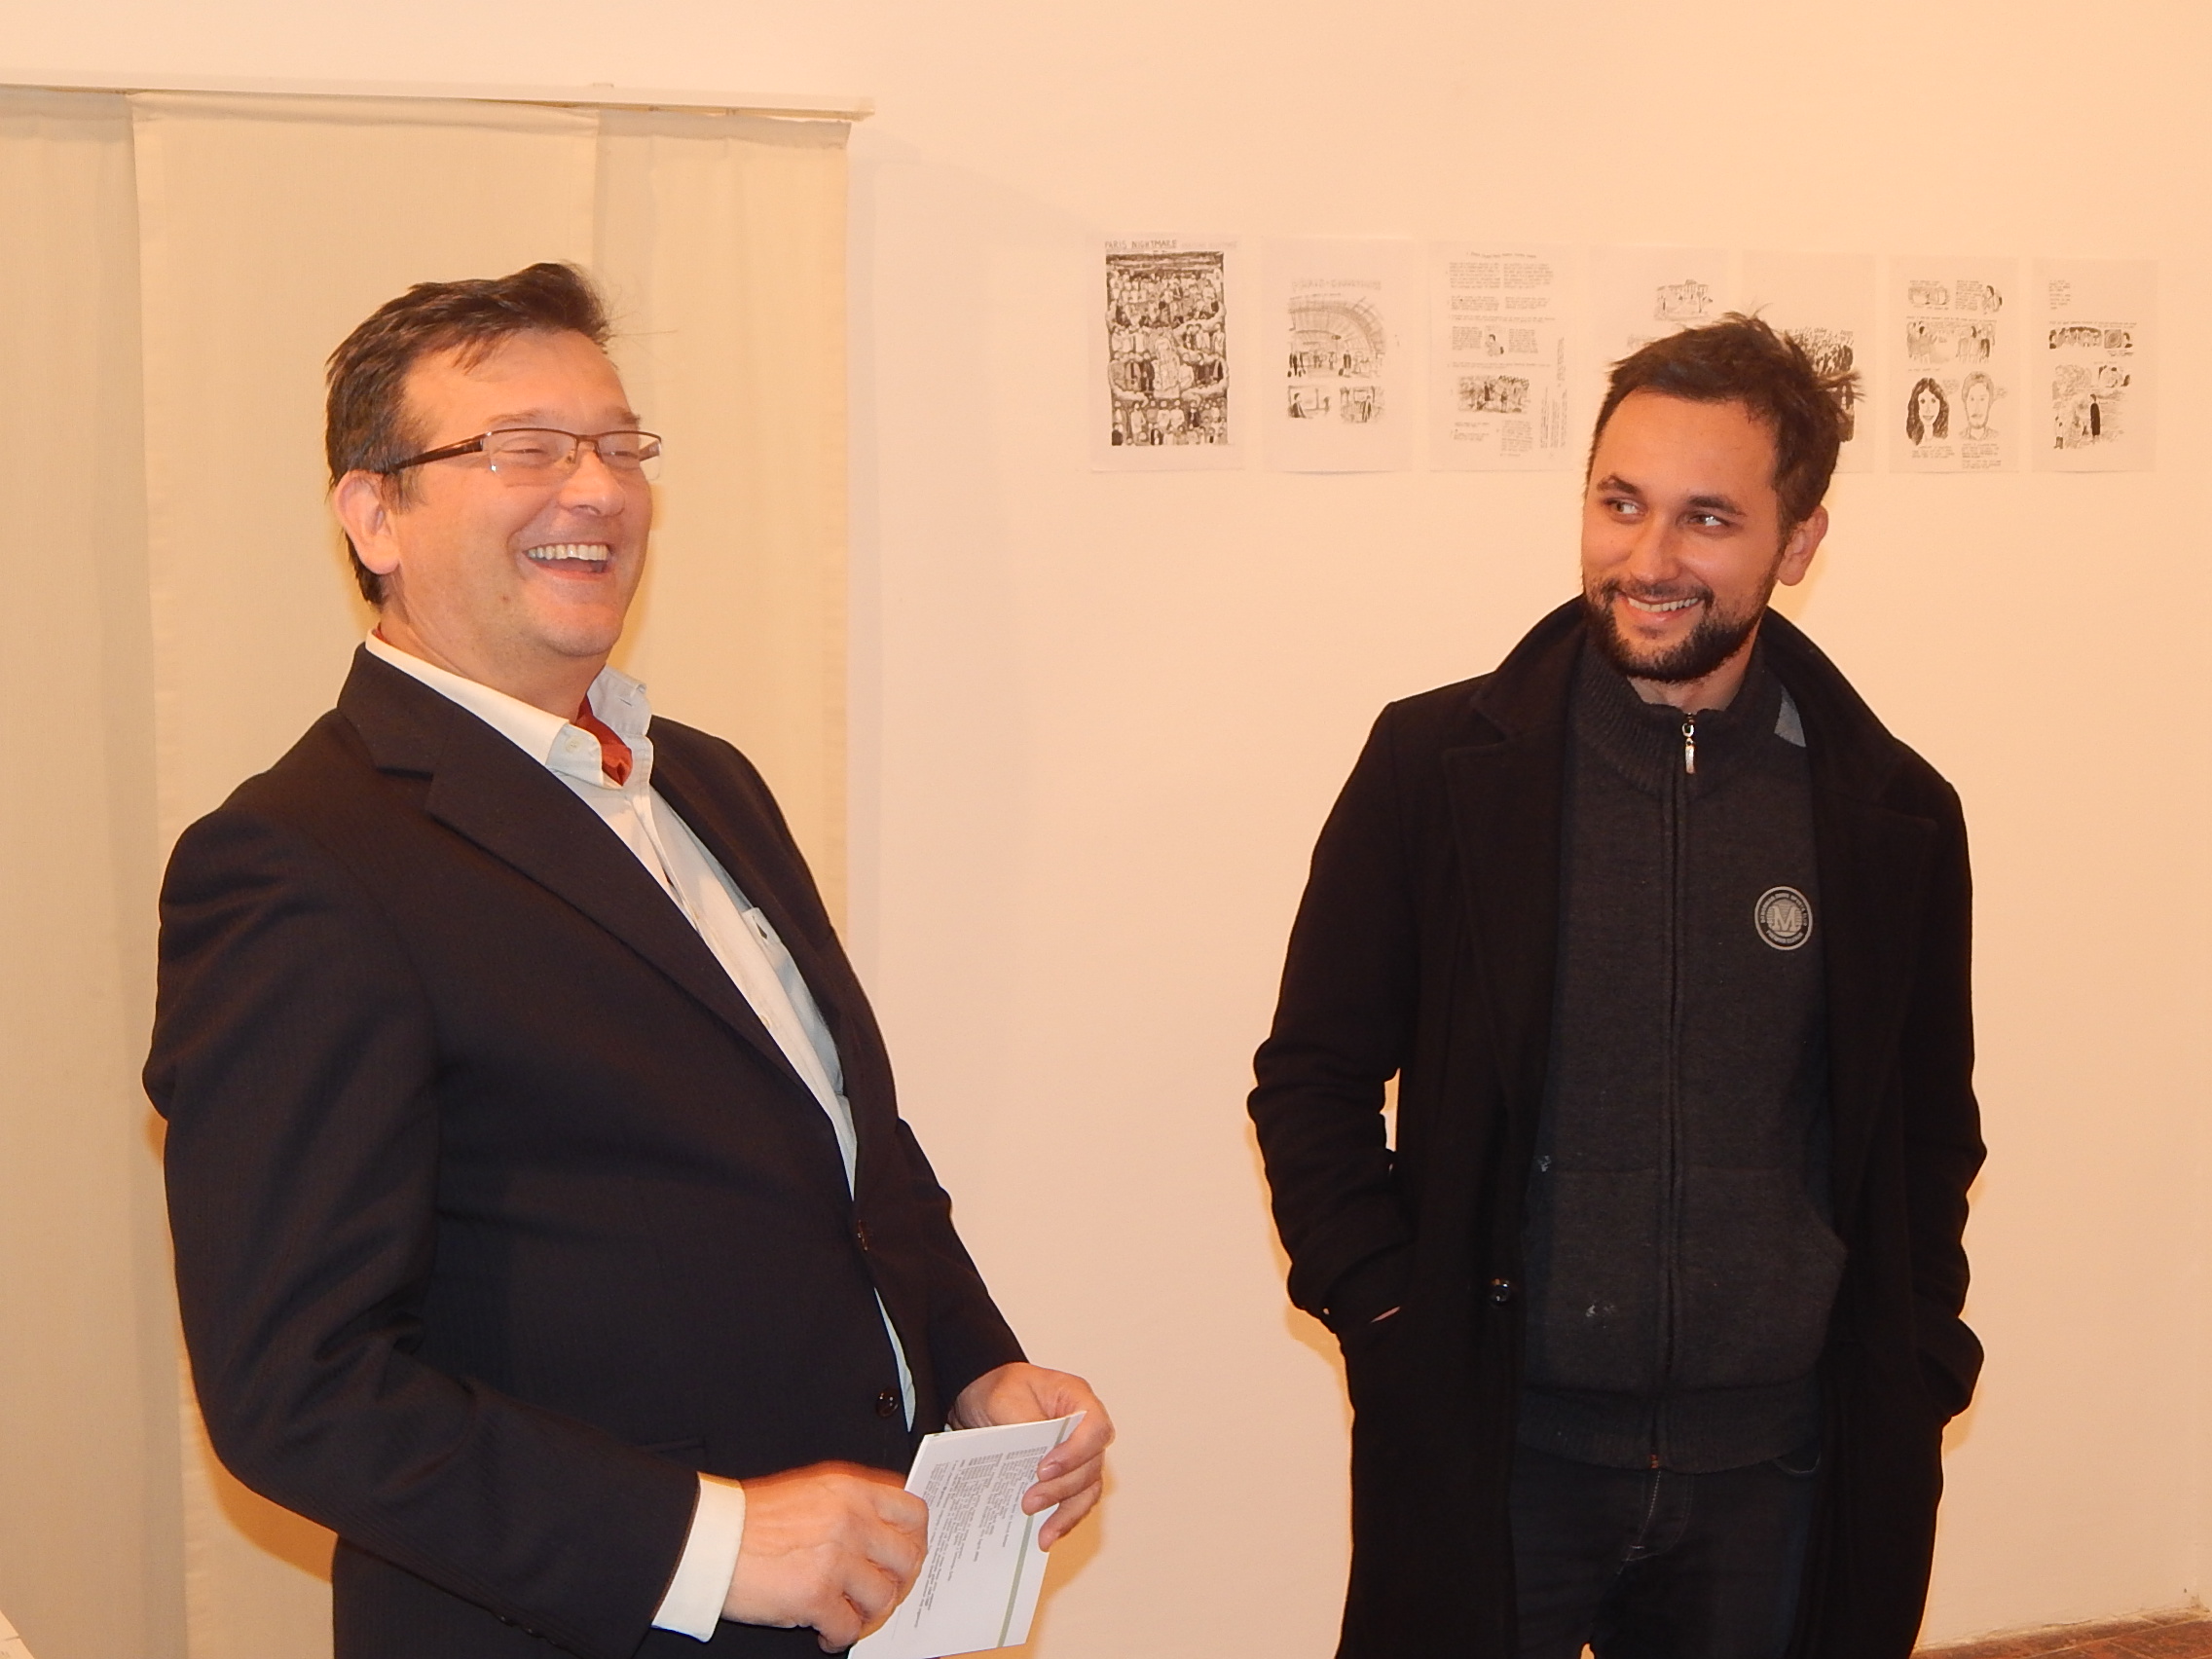 Nikola Albaneže i Stipan Tadić 5. studenog 2015. u Galeriji Zilik u Karlovcu na otvaranju izložbe "Pariške noćne more". Foto: Marin Bakić